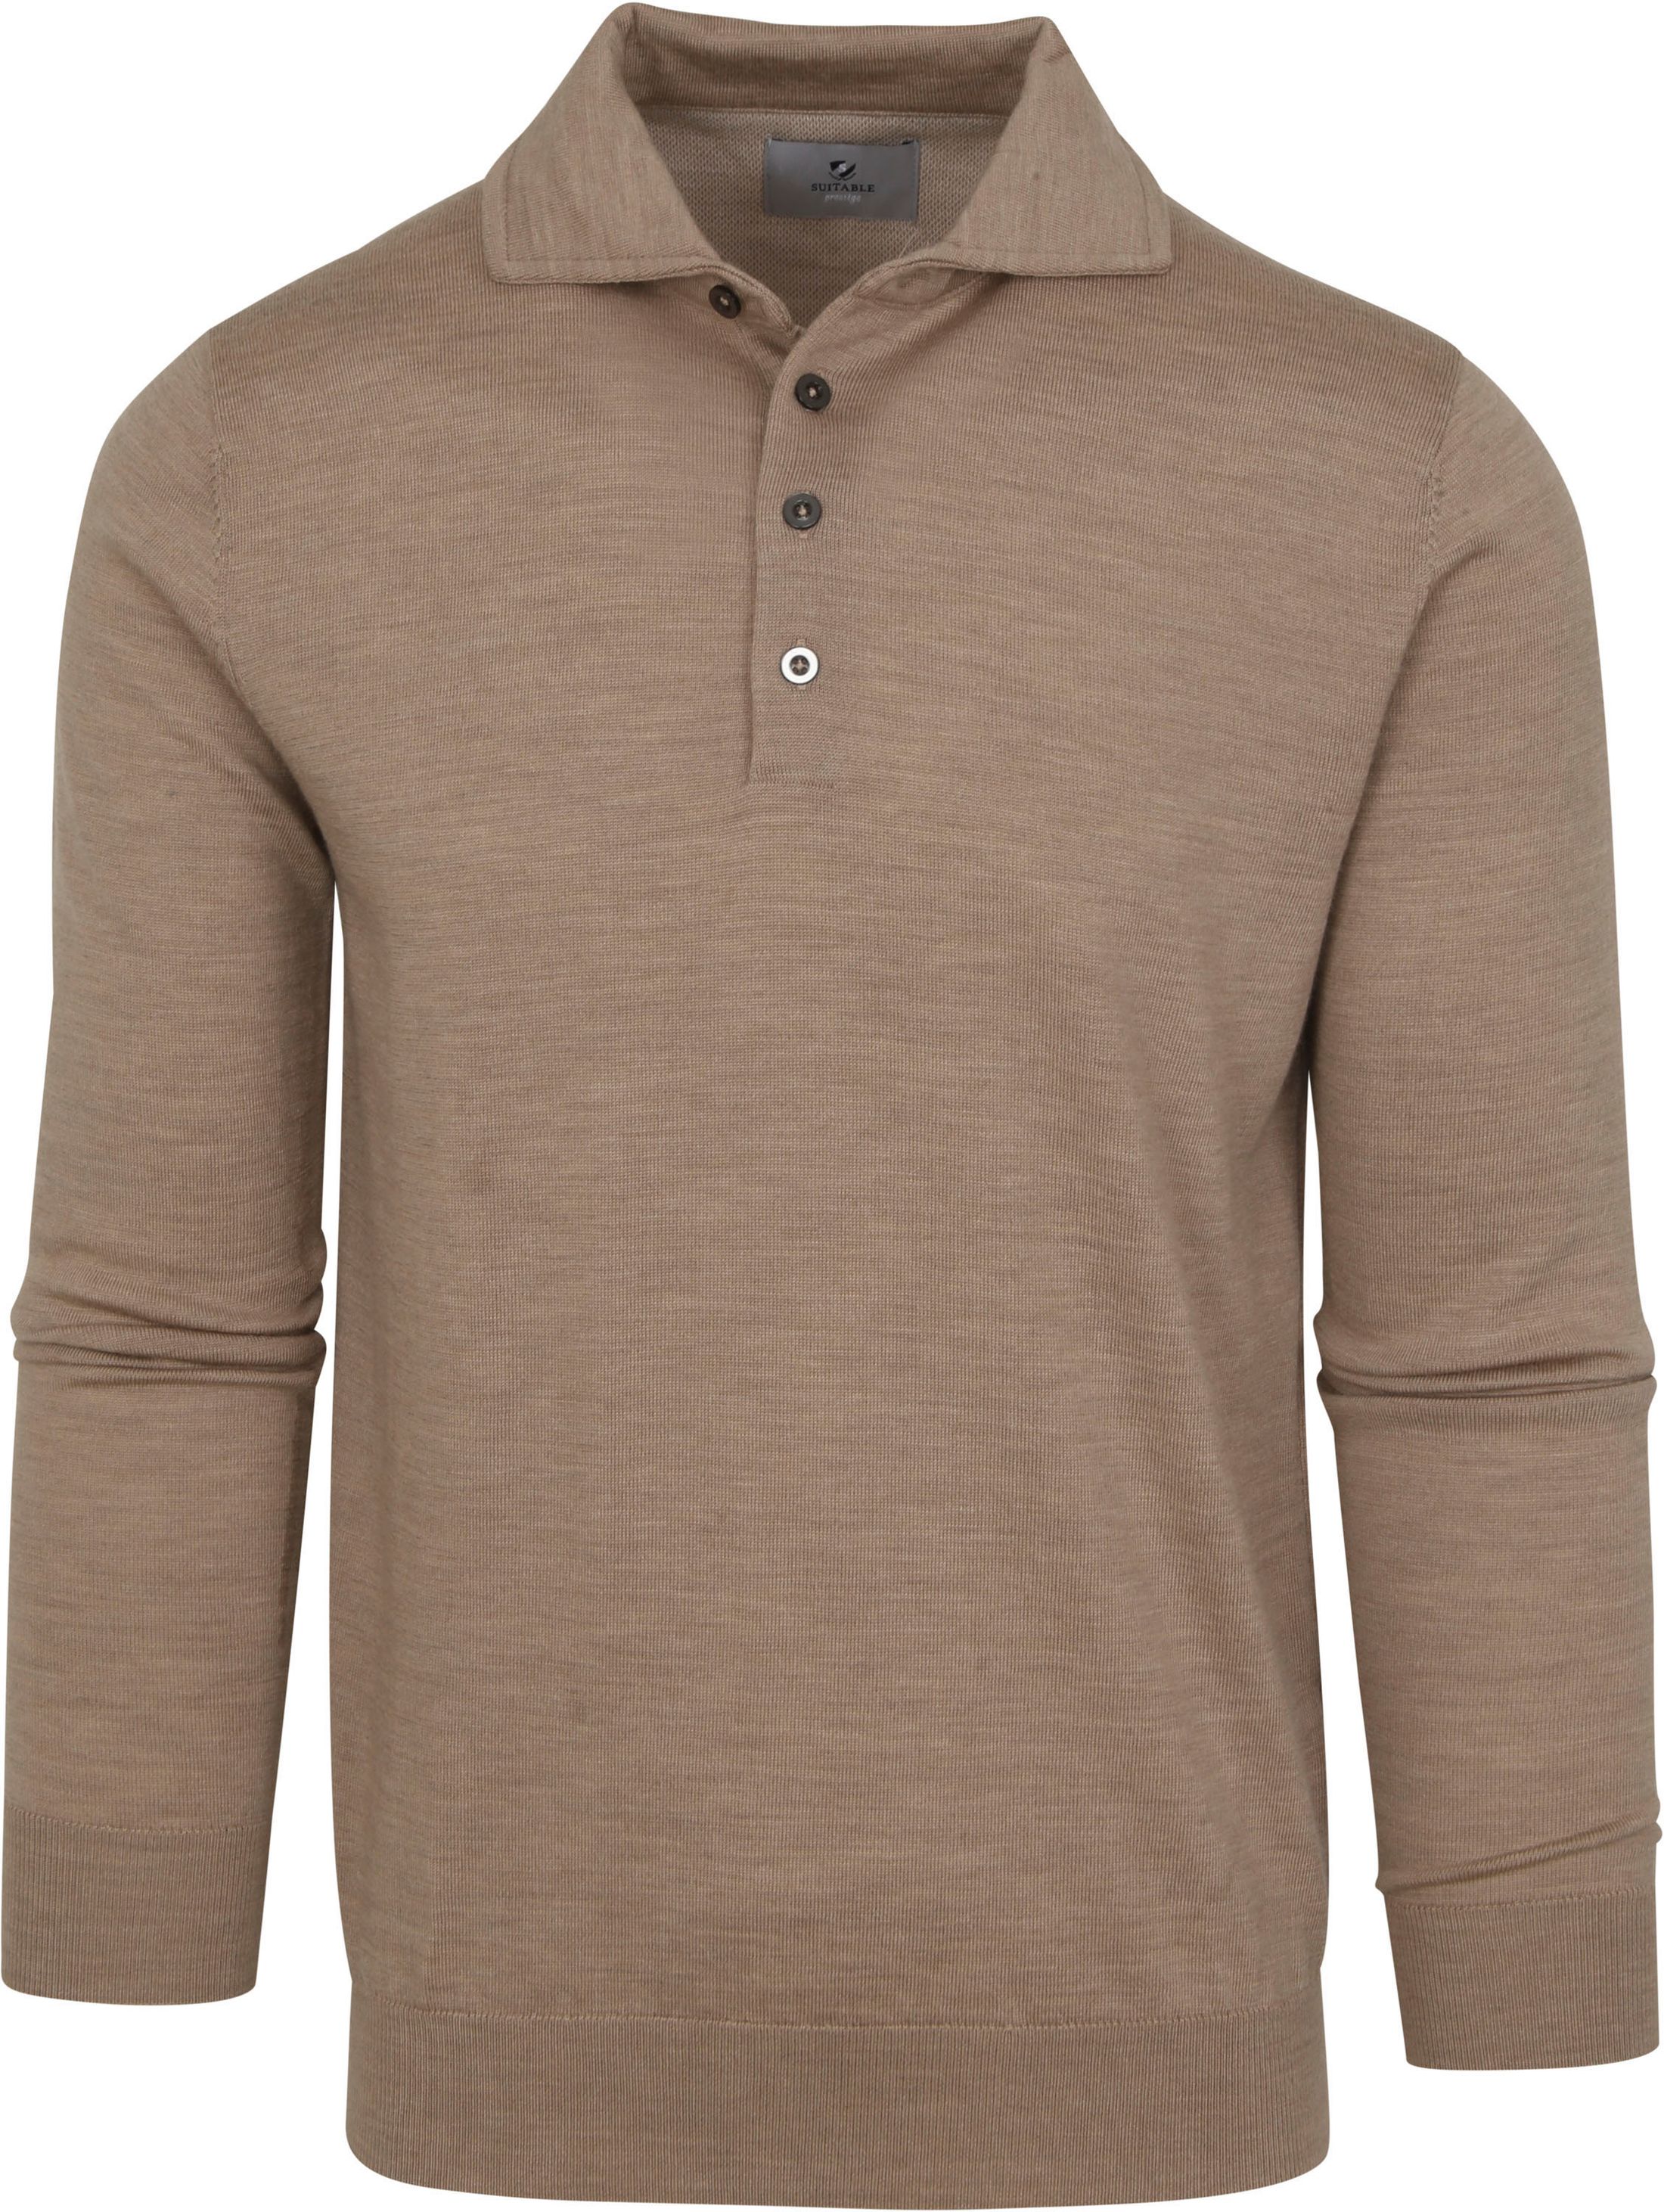 Suitable Prestige Polo Shirt Merino Wool Beige size L